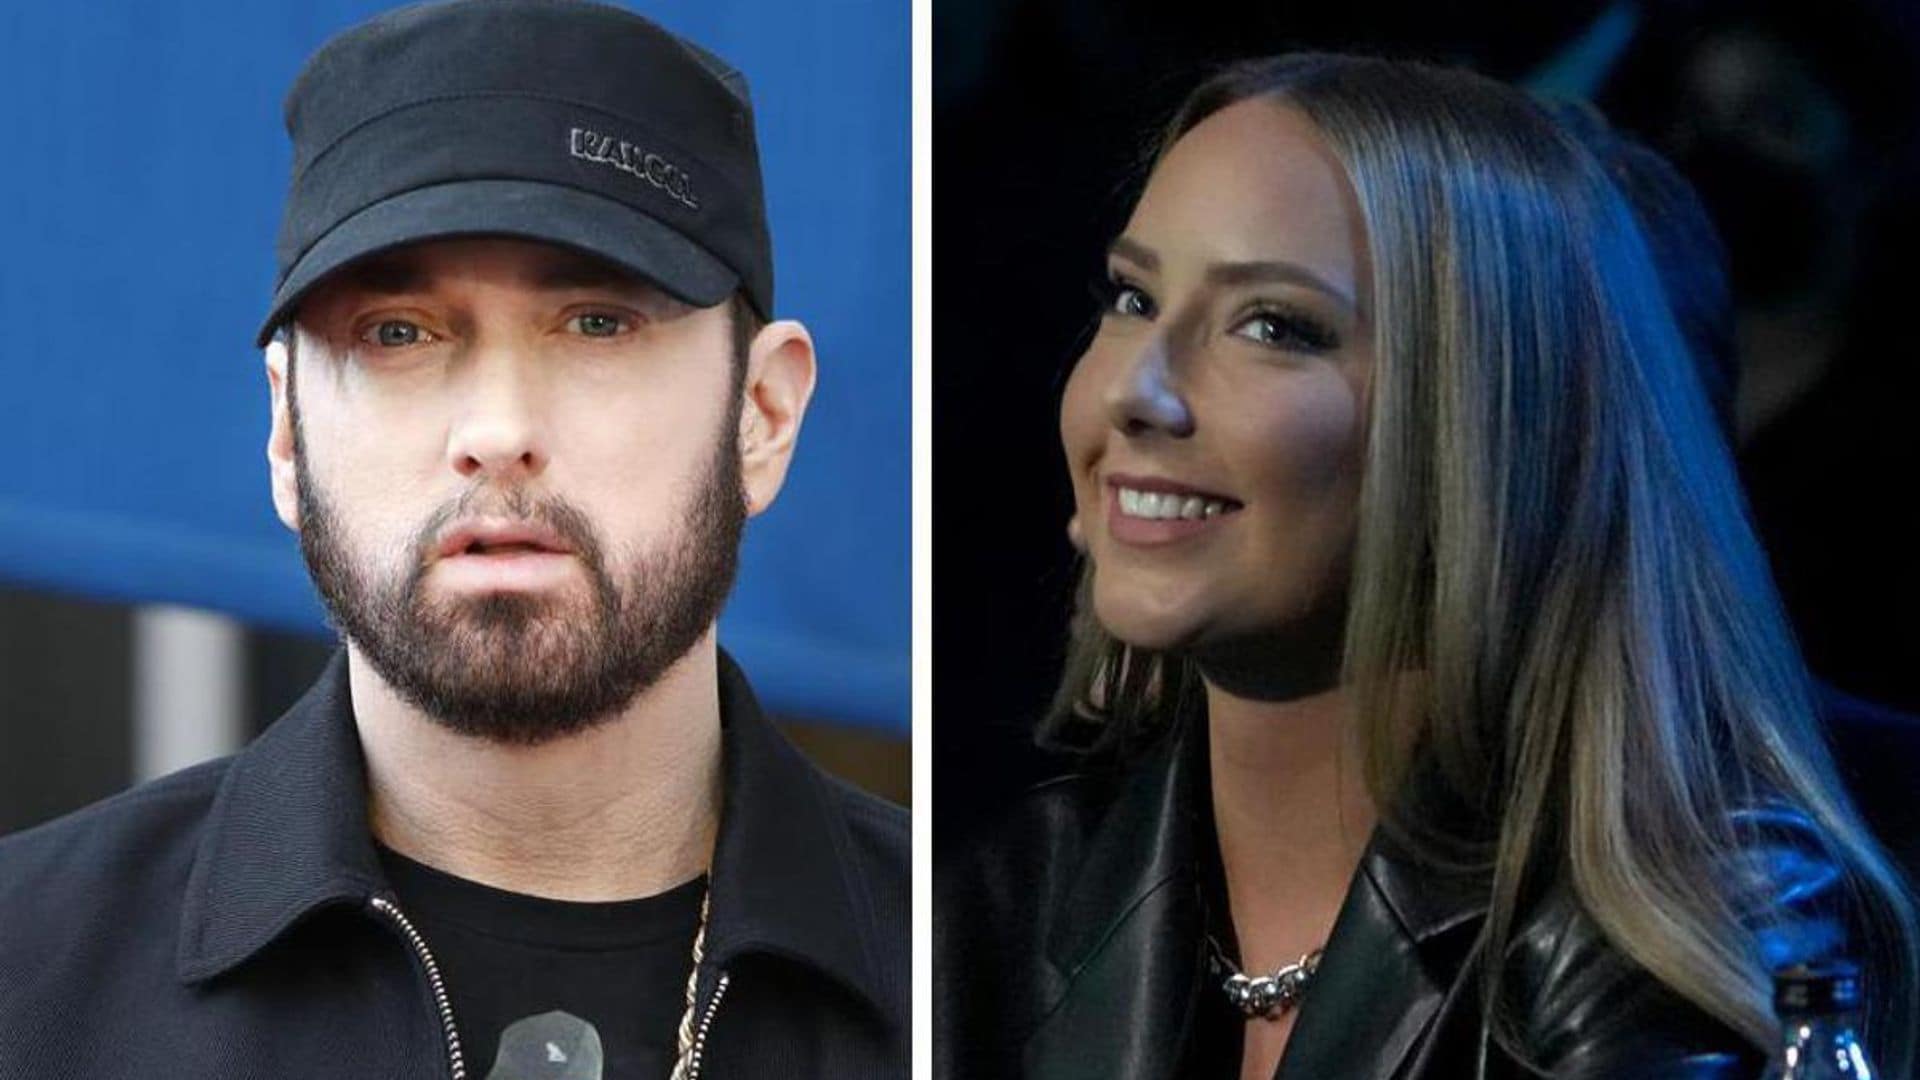 Eminem’s daughter Hailie Jade gets engaged; fans make rap jokes